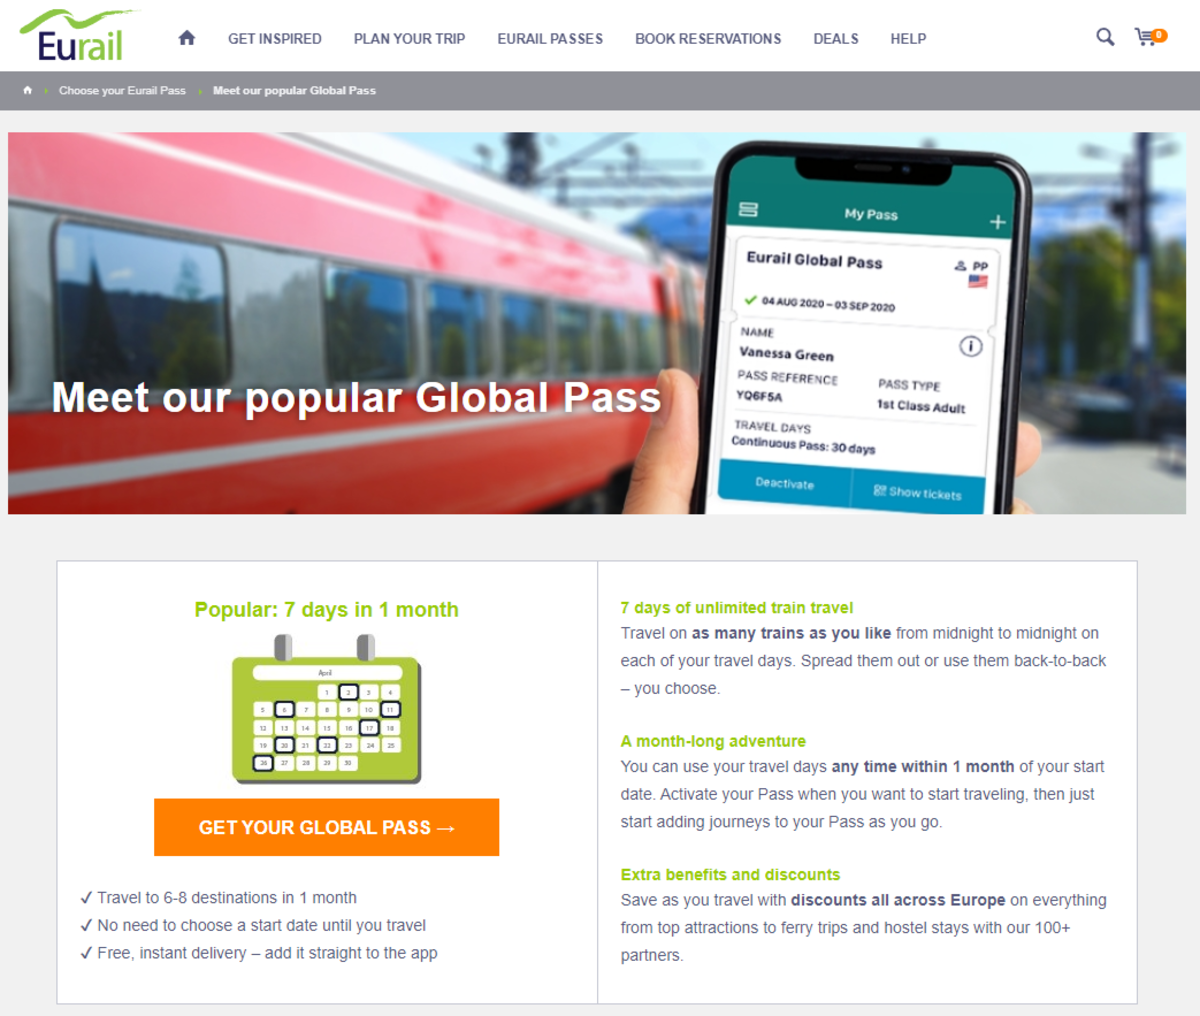 Eurail Global Pass Info